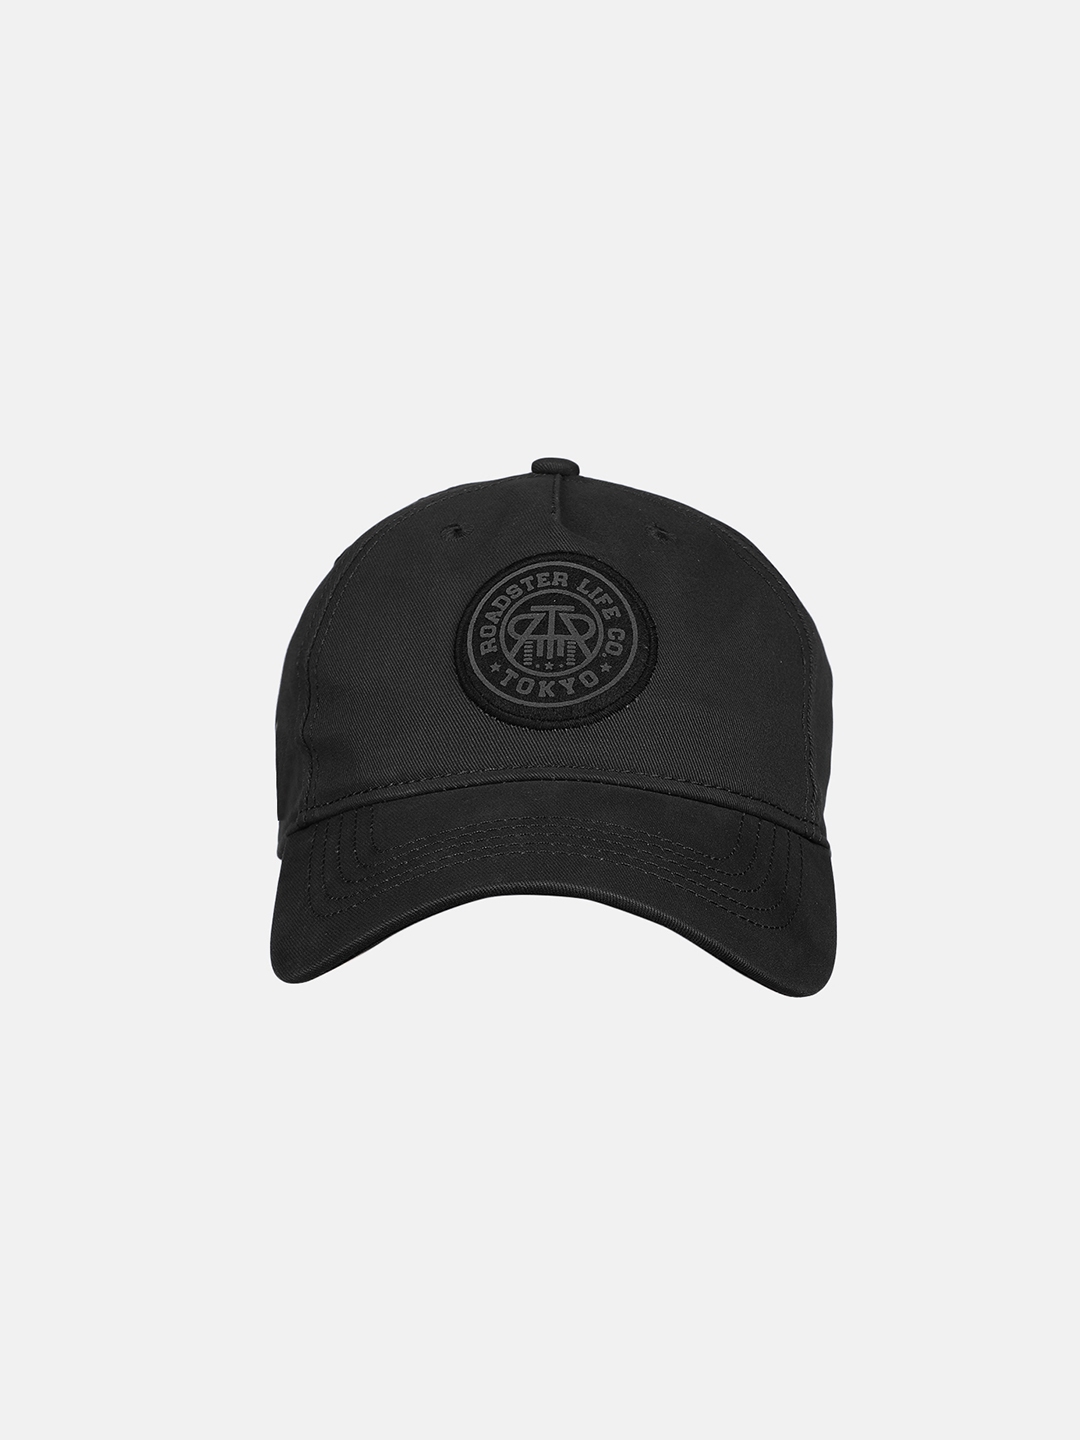 Buy Roadster Unisex Black Printed Baseball Cap - Caps for Unisex ...